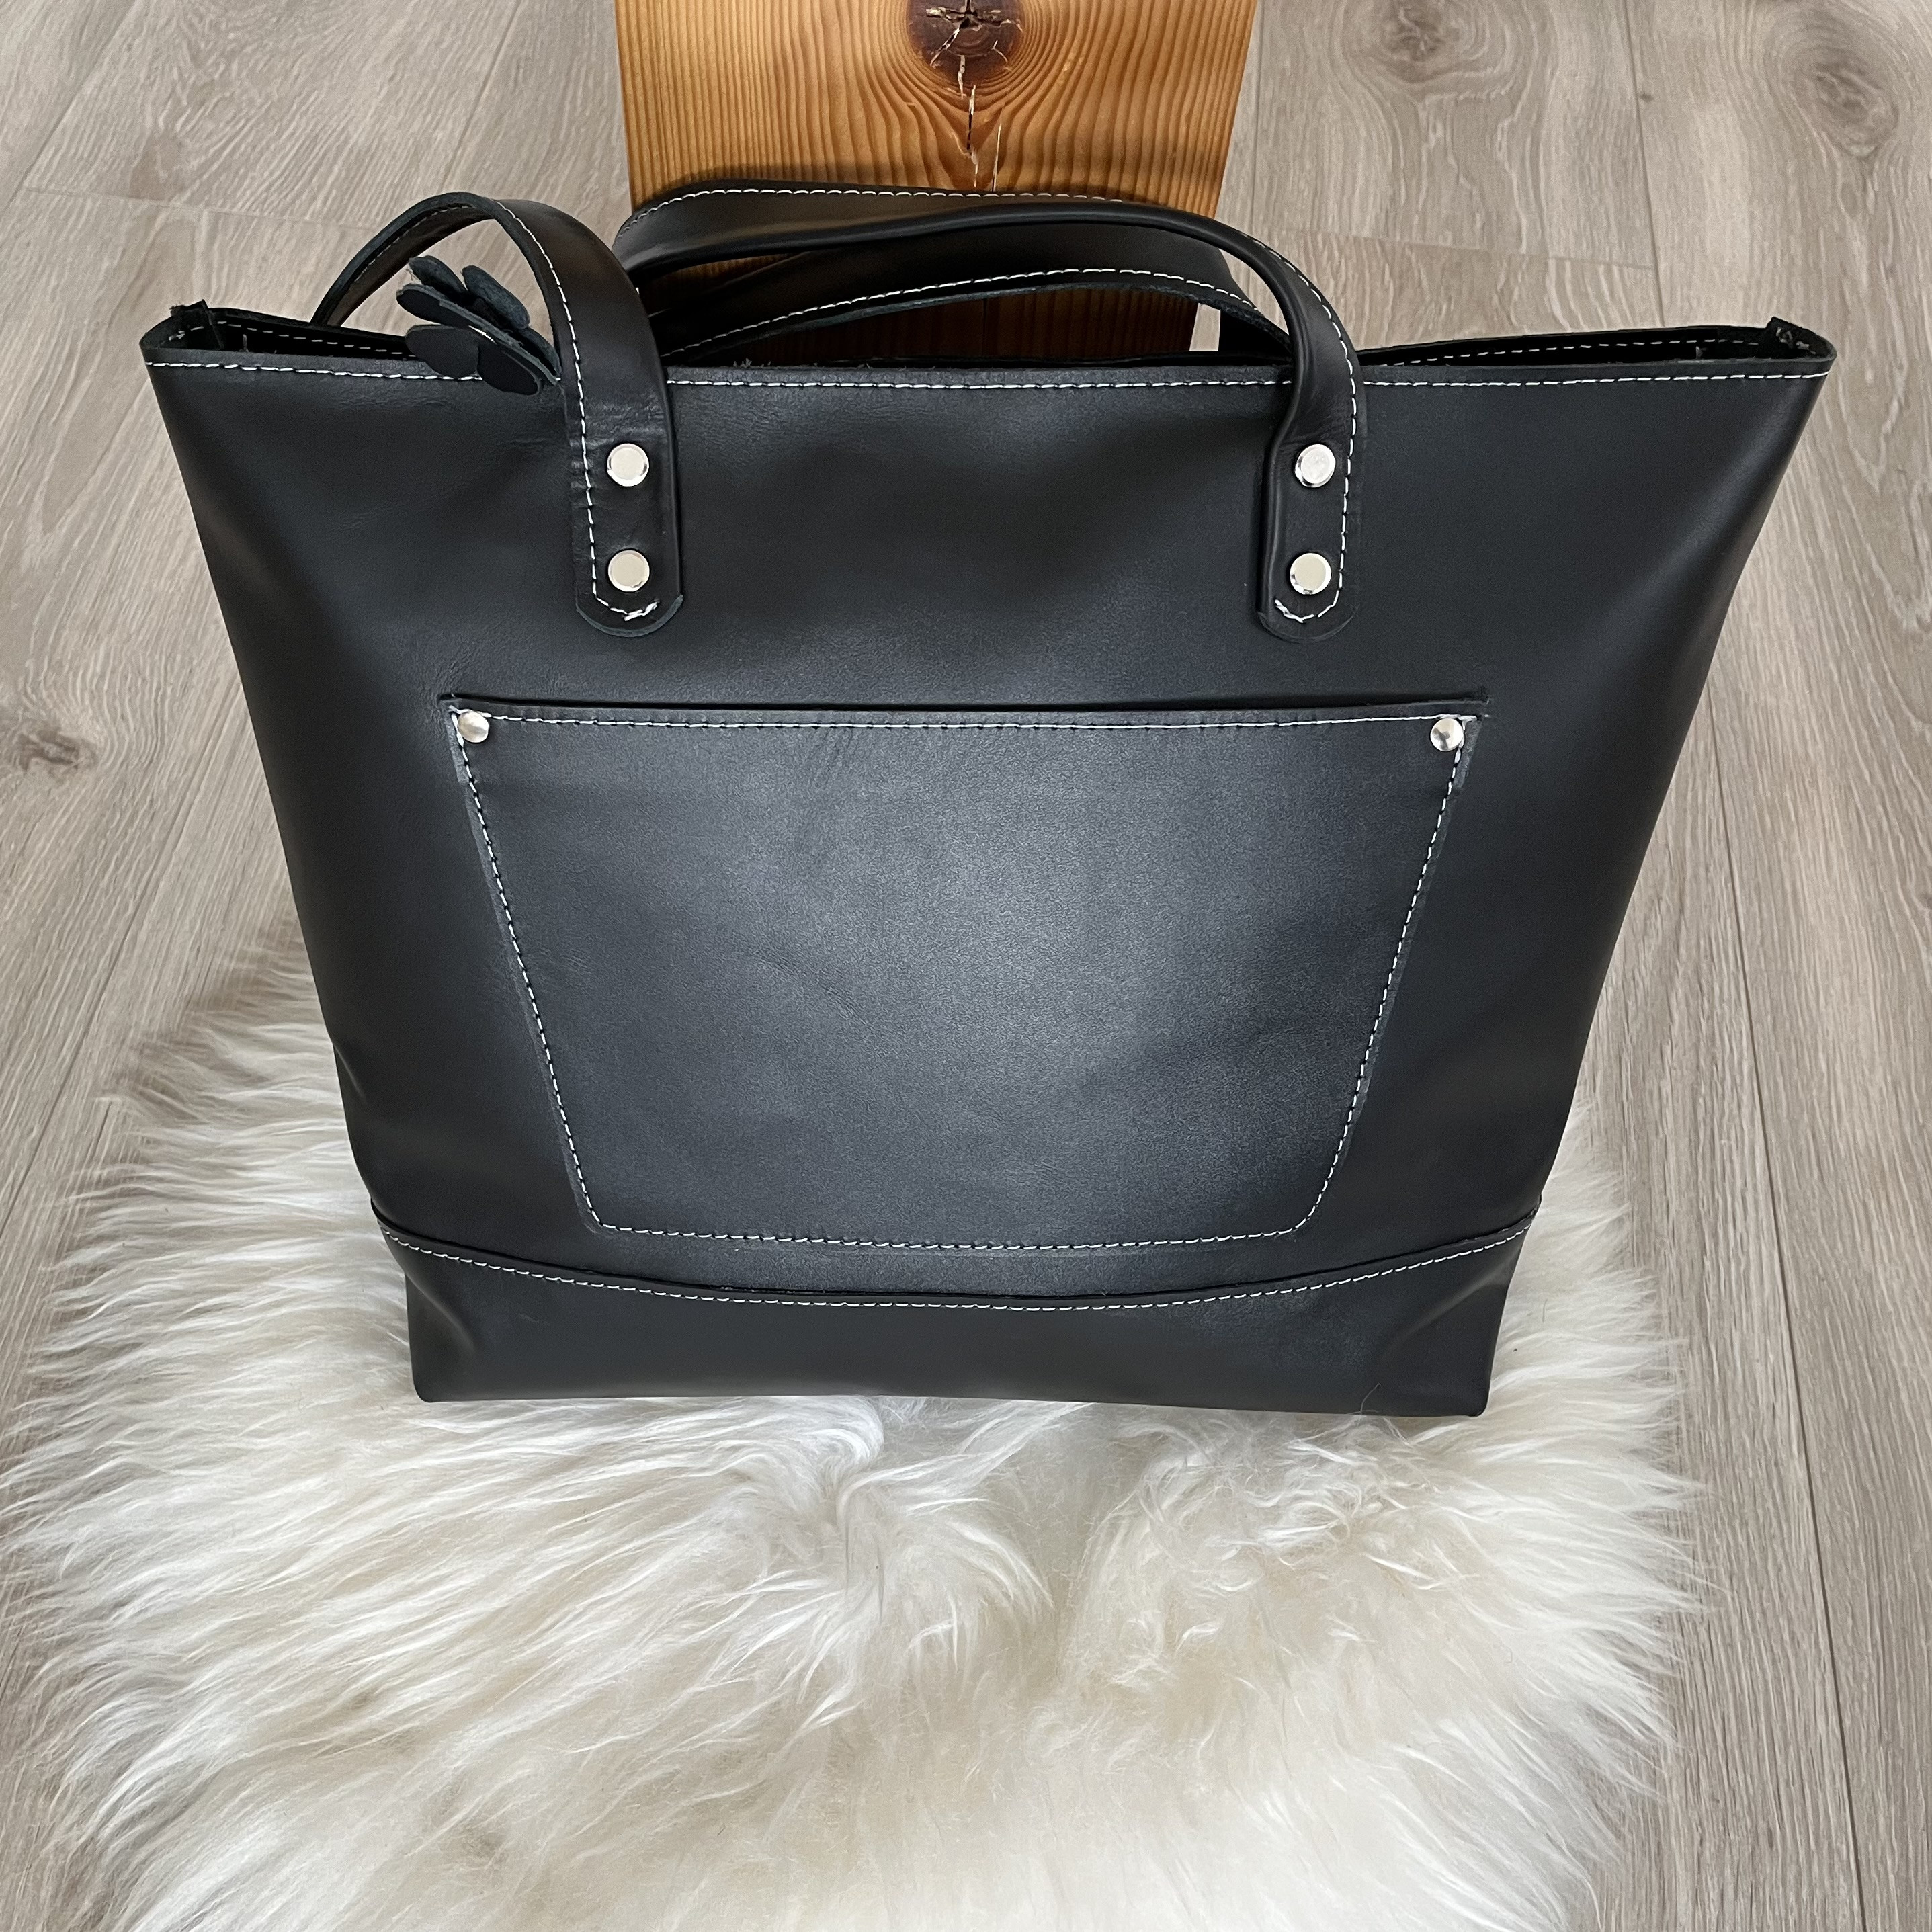 Czarna torba Shopperka ze skóry format A5 na ramie.